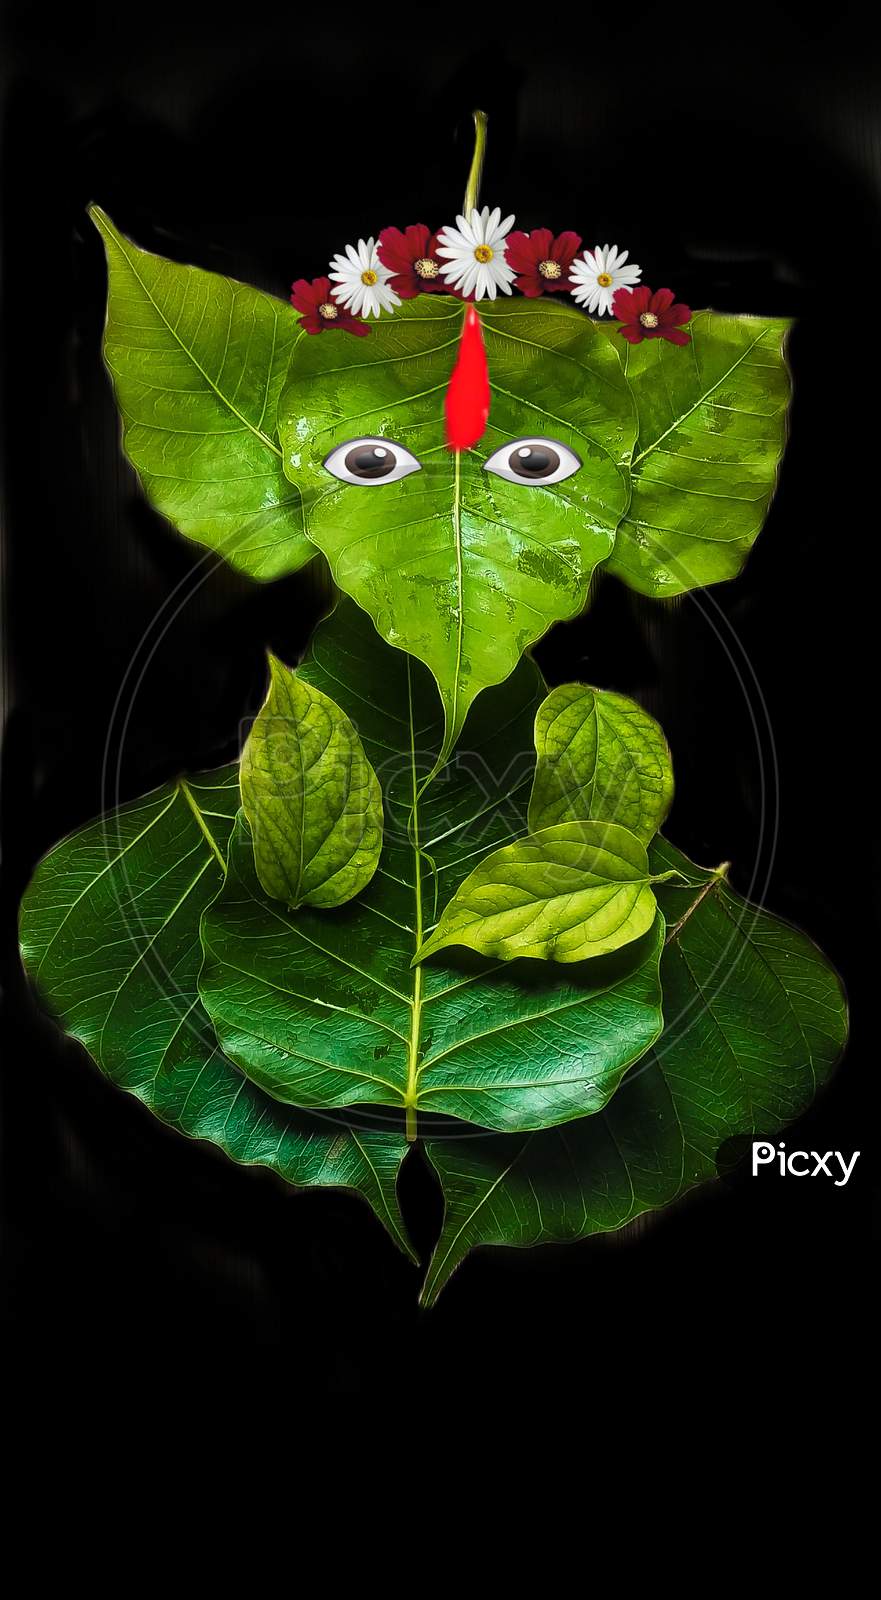 Image of Beautiful god ganpatiji from leafs-MP259559-Picxy